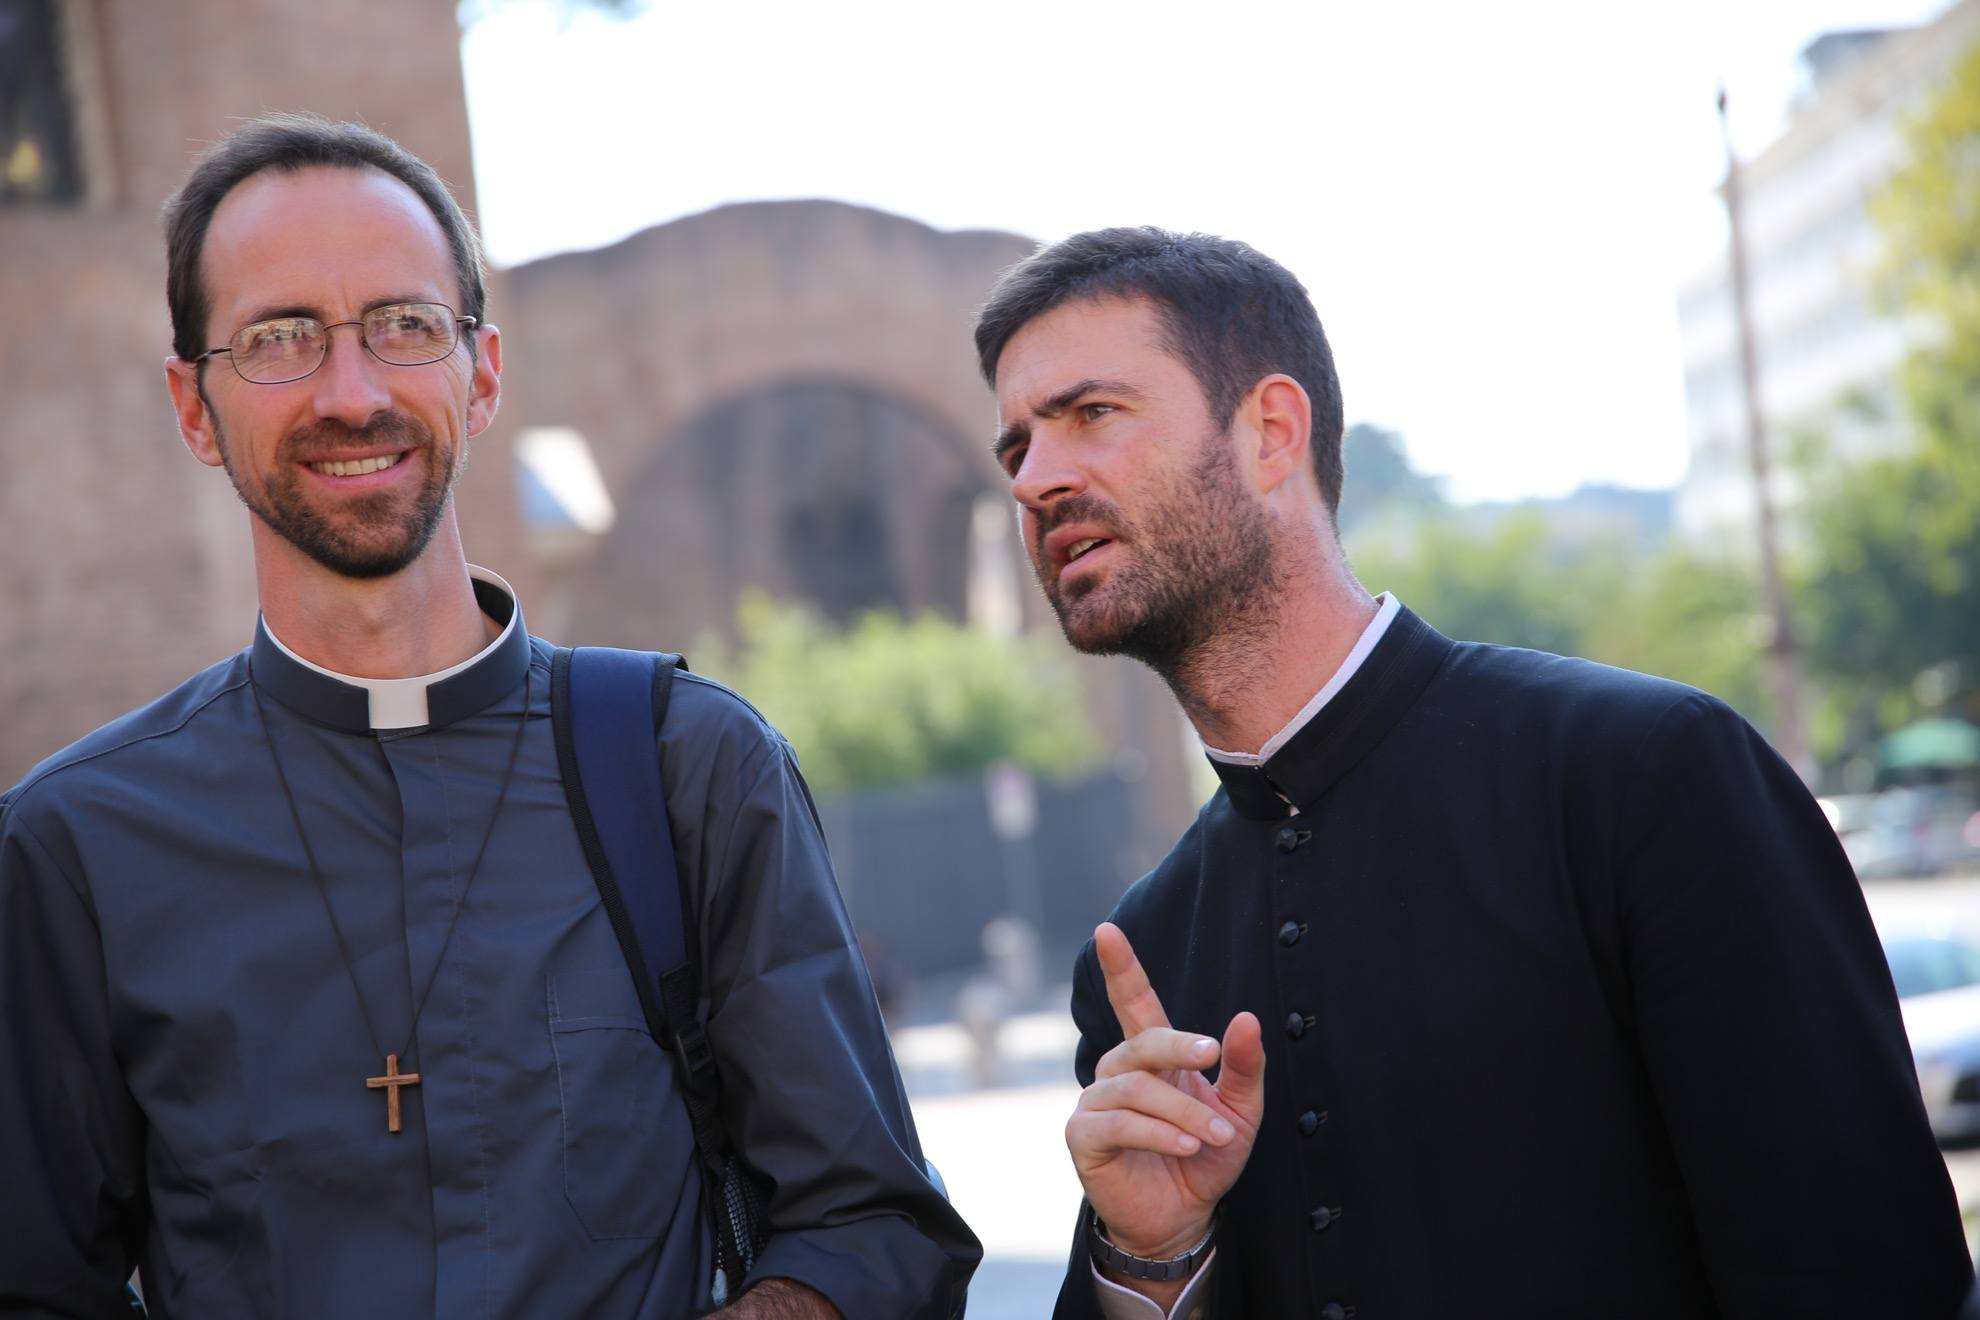 Voyage des prêtres à Rome